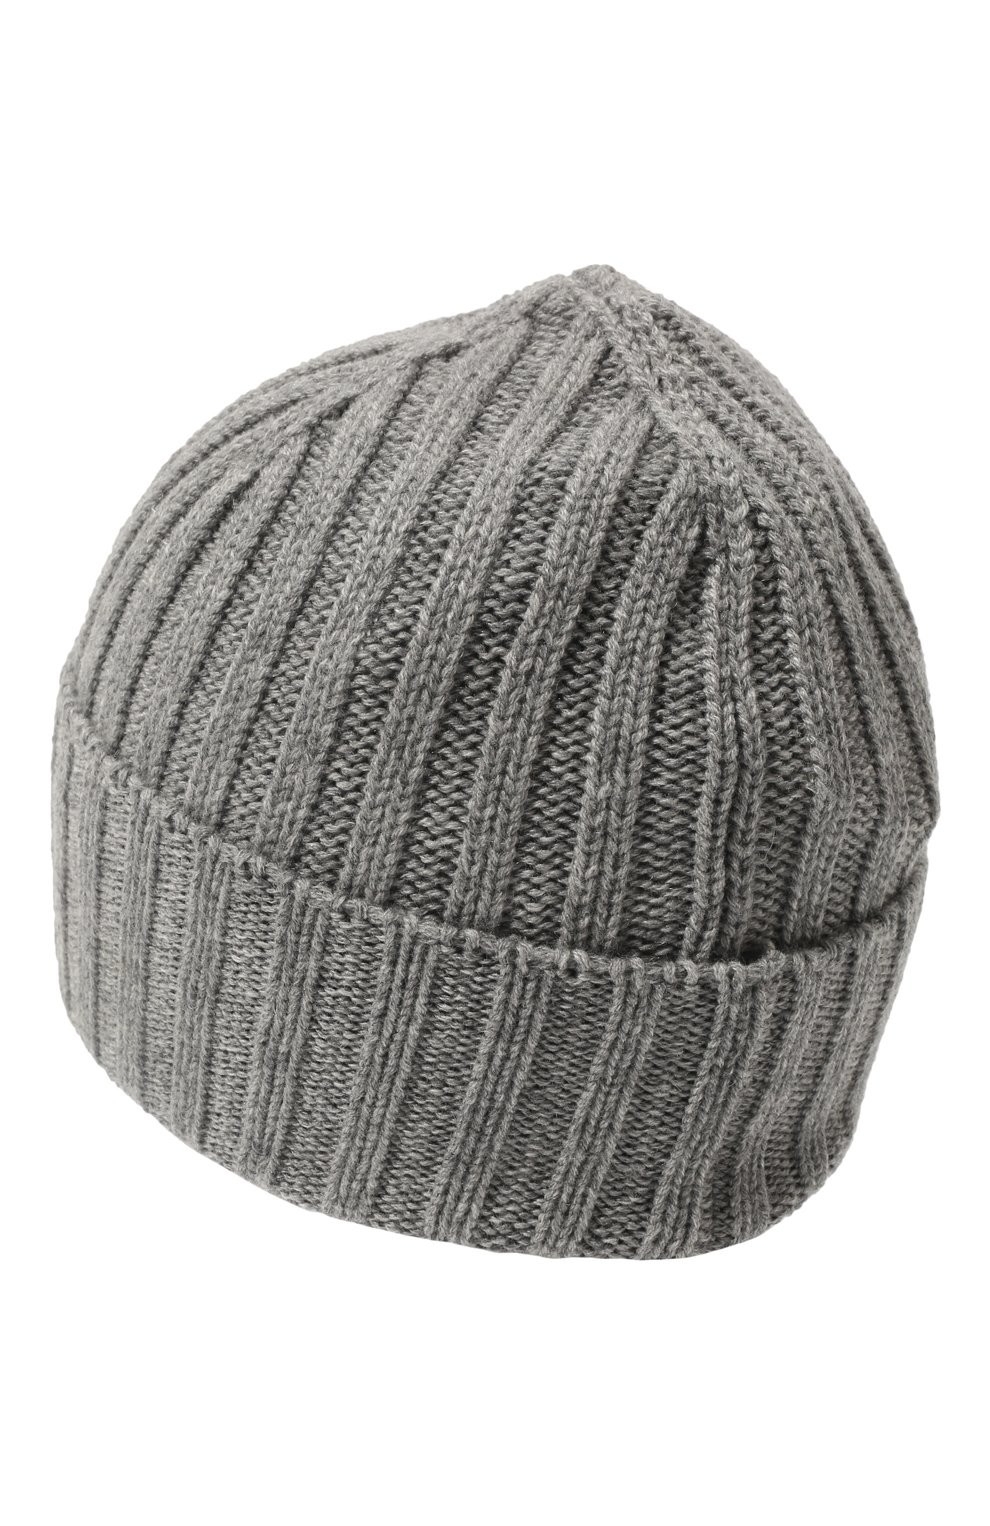 Мужская кашемировая шапка INVERNI серого цвета, арт. 4712 CM | Фото 3 (Материал: Текстиль, Кашемир, Шерсть; Кросс-КТ: Трикотаж)